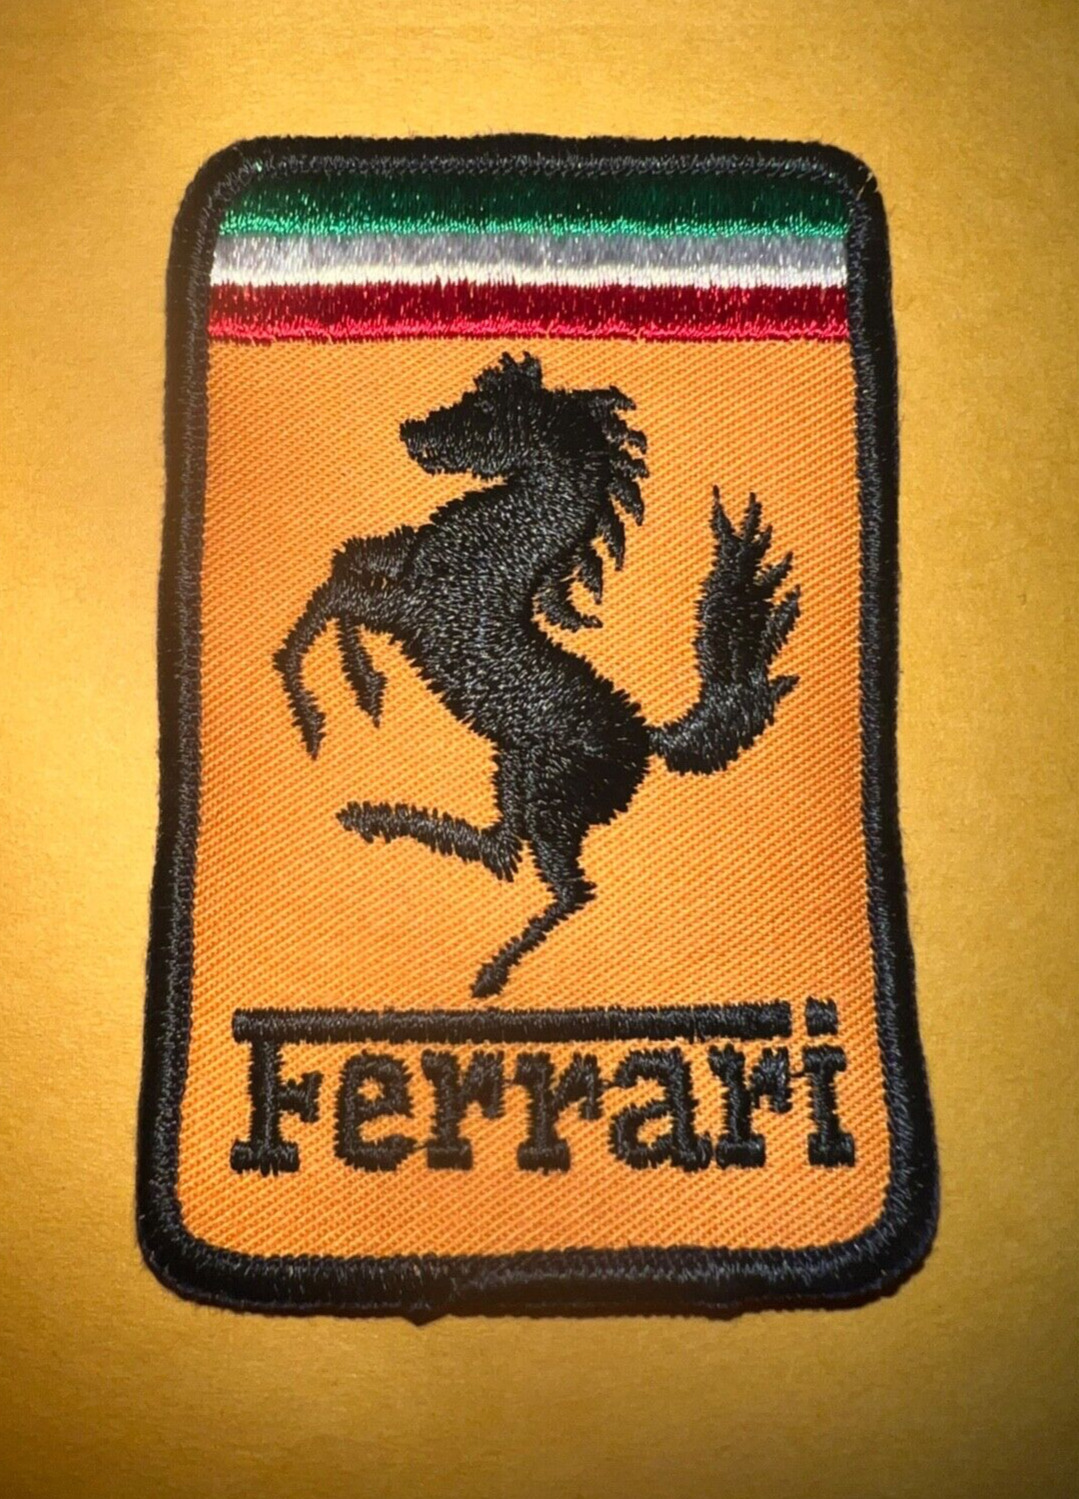 Vintage Ferrari patch, Ferrari patch, Ferrari